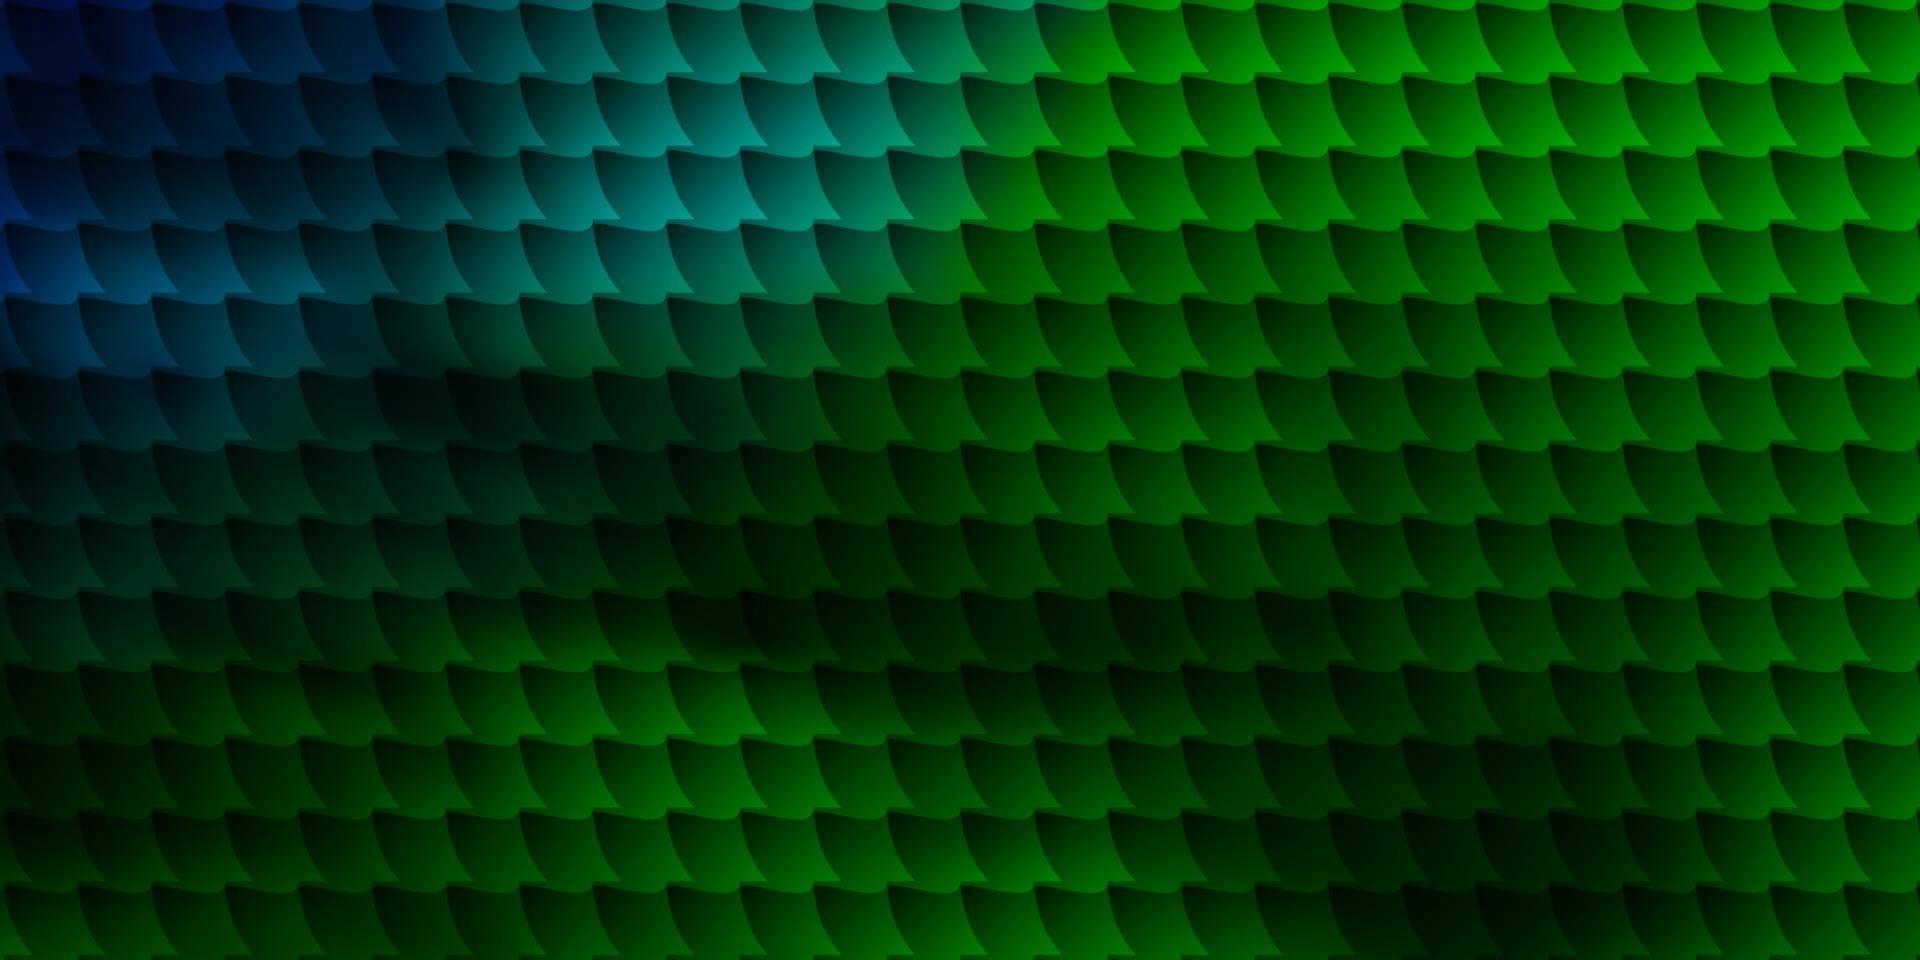 Fondo de vector multicolor oscuro con rectángulos.